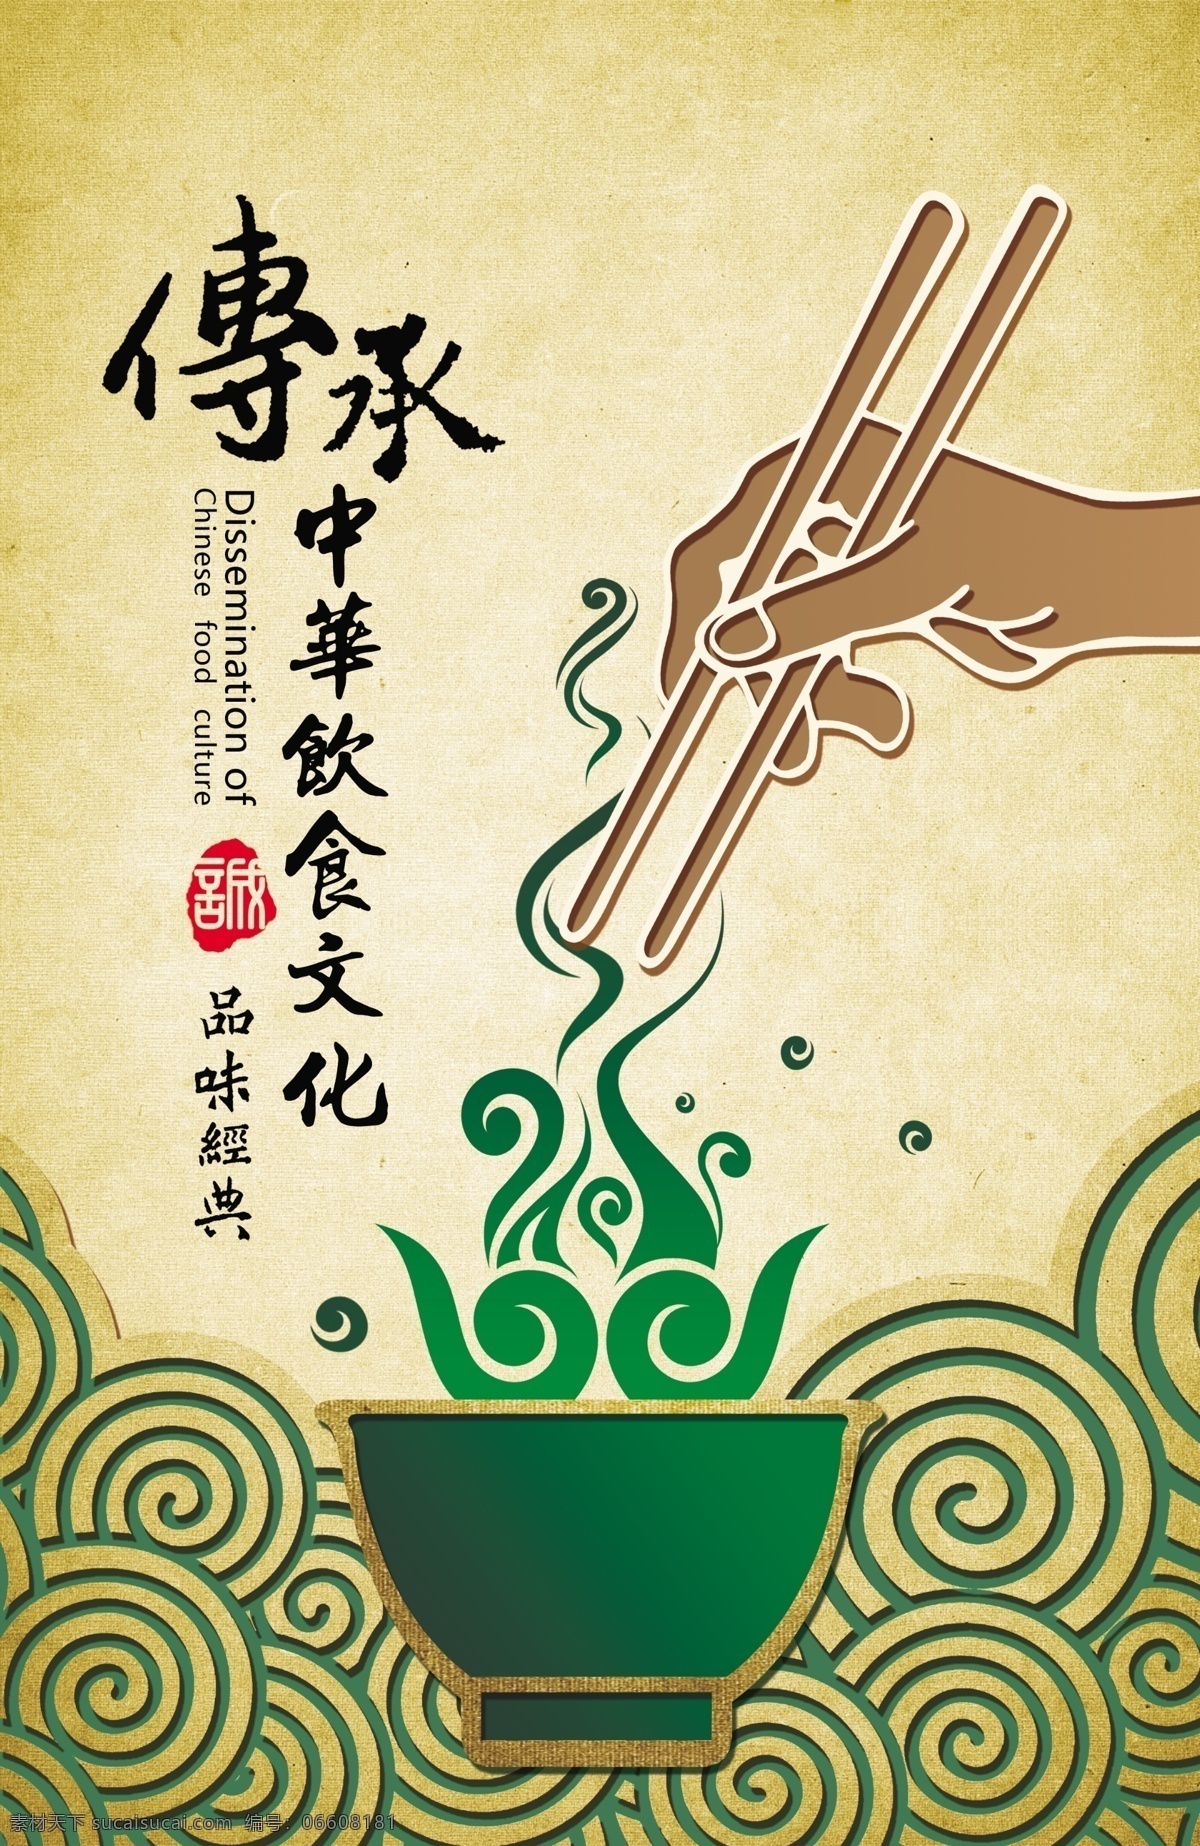 传承 中华 饮食文化 中华饮食 文化 平面设计 招贴海报 广告设计模板 源文件